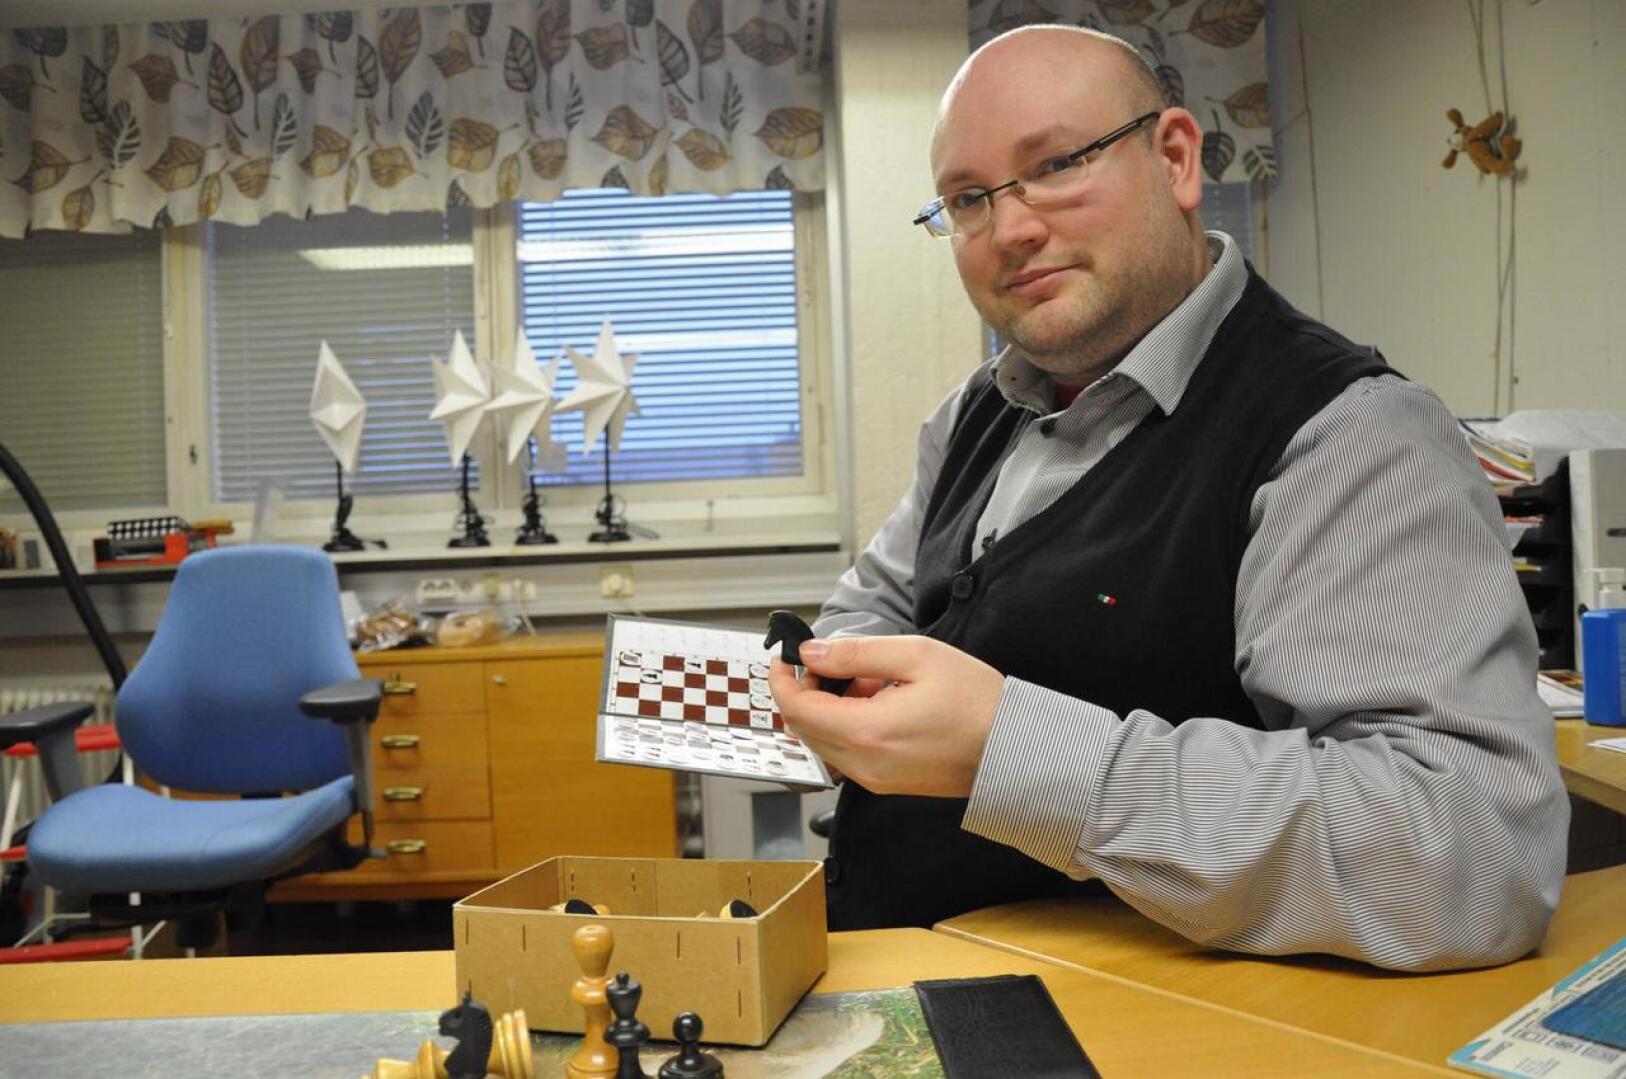 Anton Meriläinen pitää mieluisimpana kunnon puista shakkilautaa ja nappuloita. Mieleinen on myös taskushakki, jonka avulla voi analysoida mestarien pelejä.